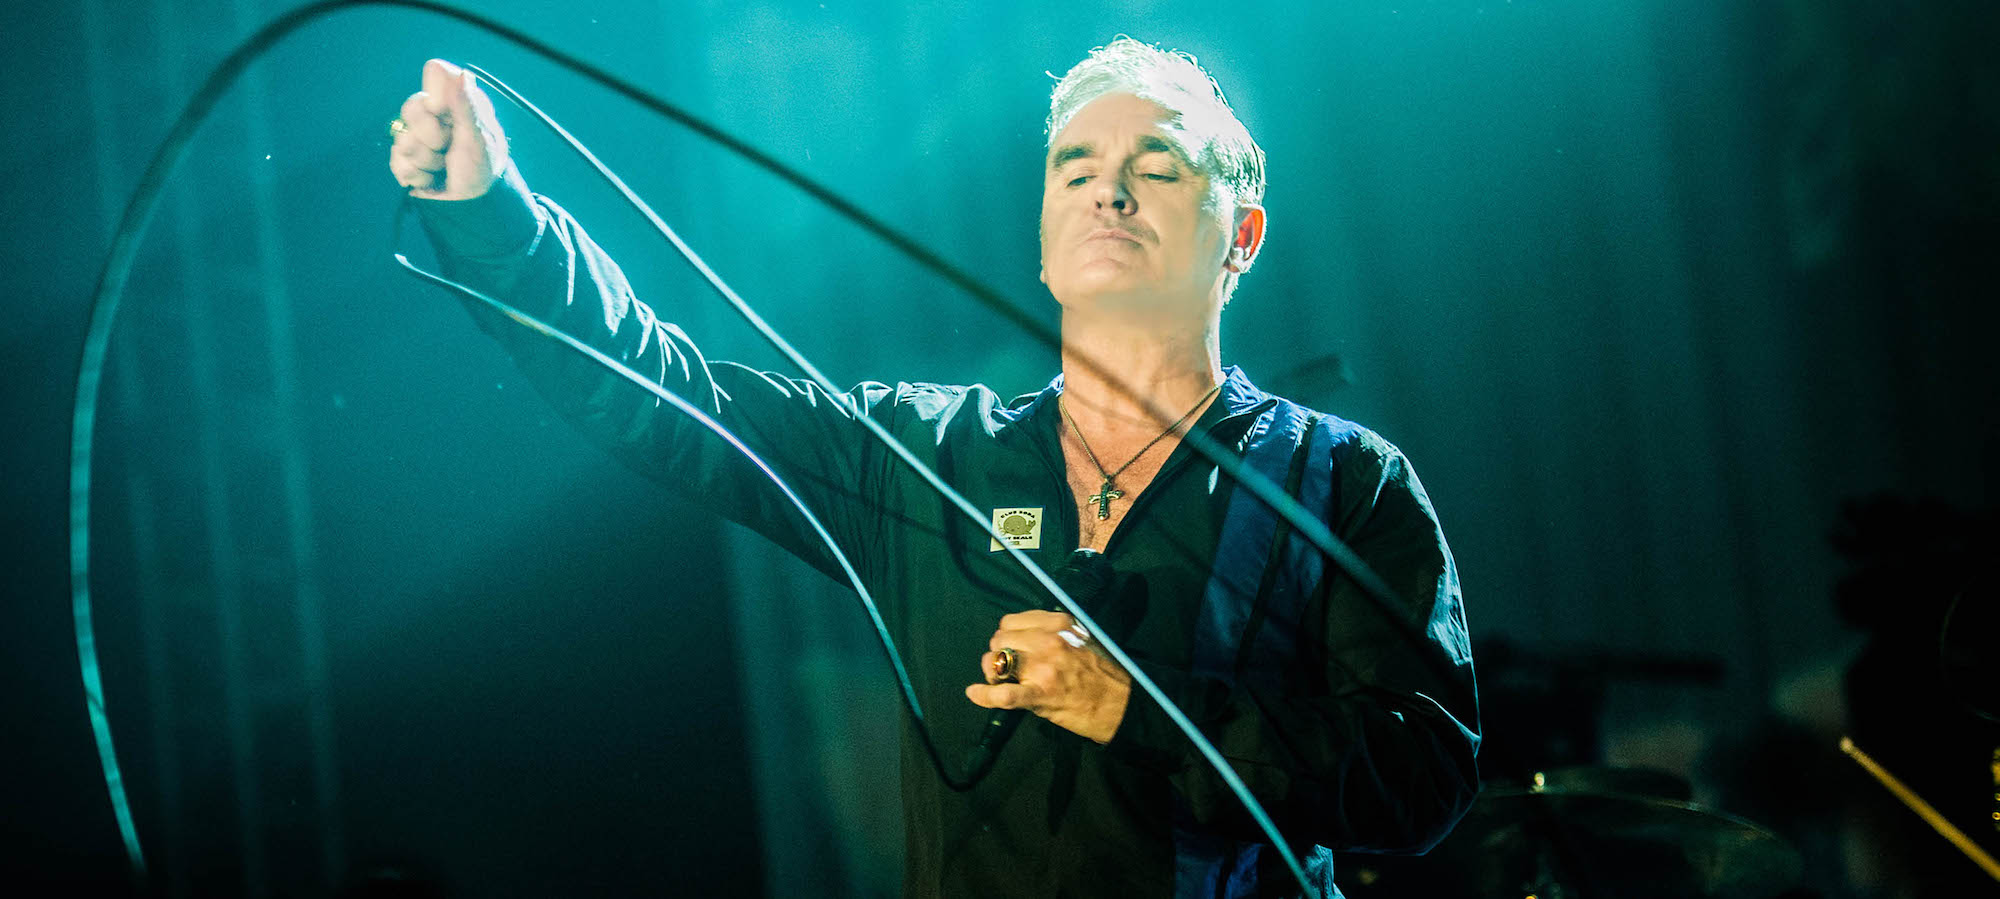 Morrissey, Bauhaus, Blondie to Headline Cruel World Festival 2022